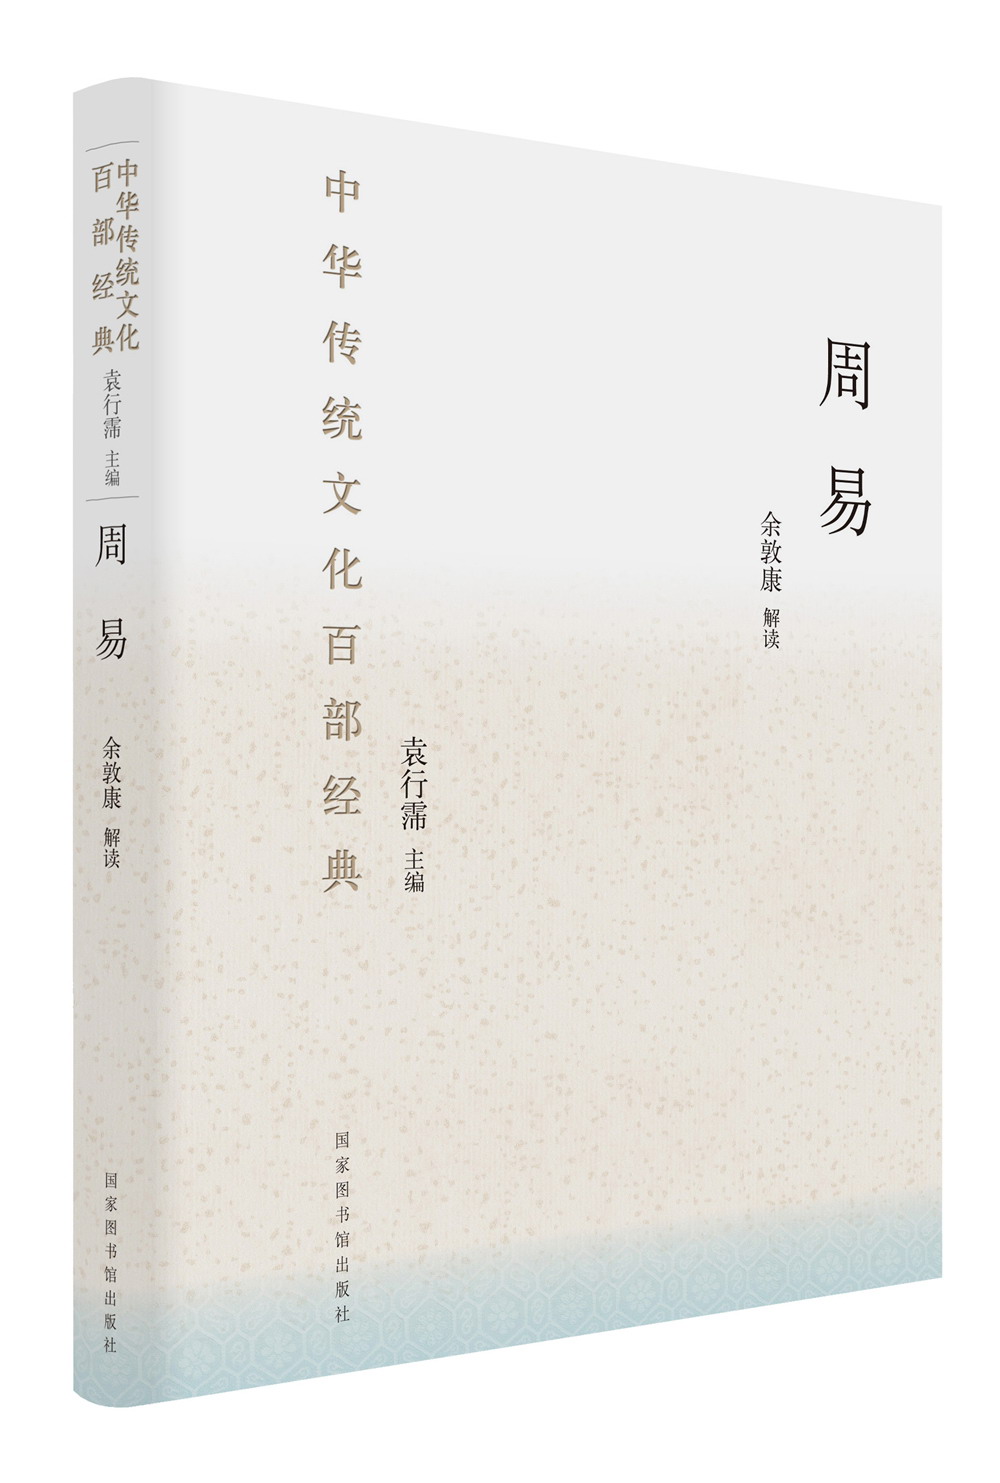 中国哲学历史价格查询小程序|中国哲学价格走势